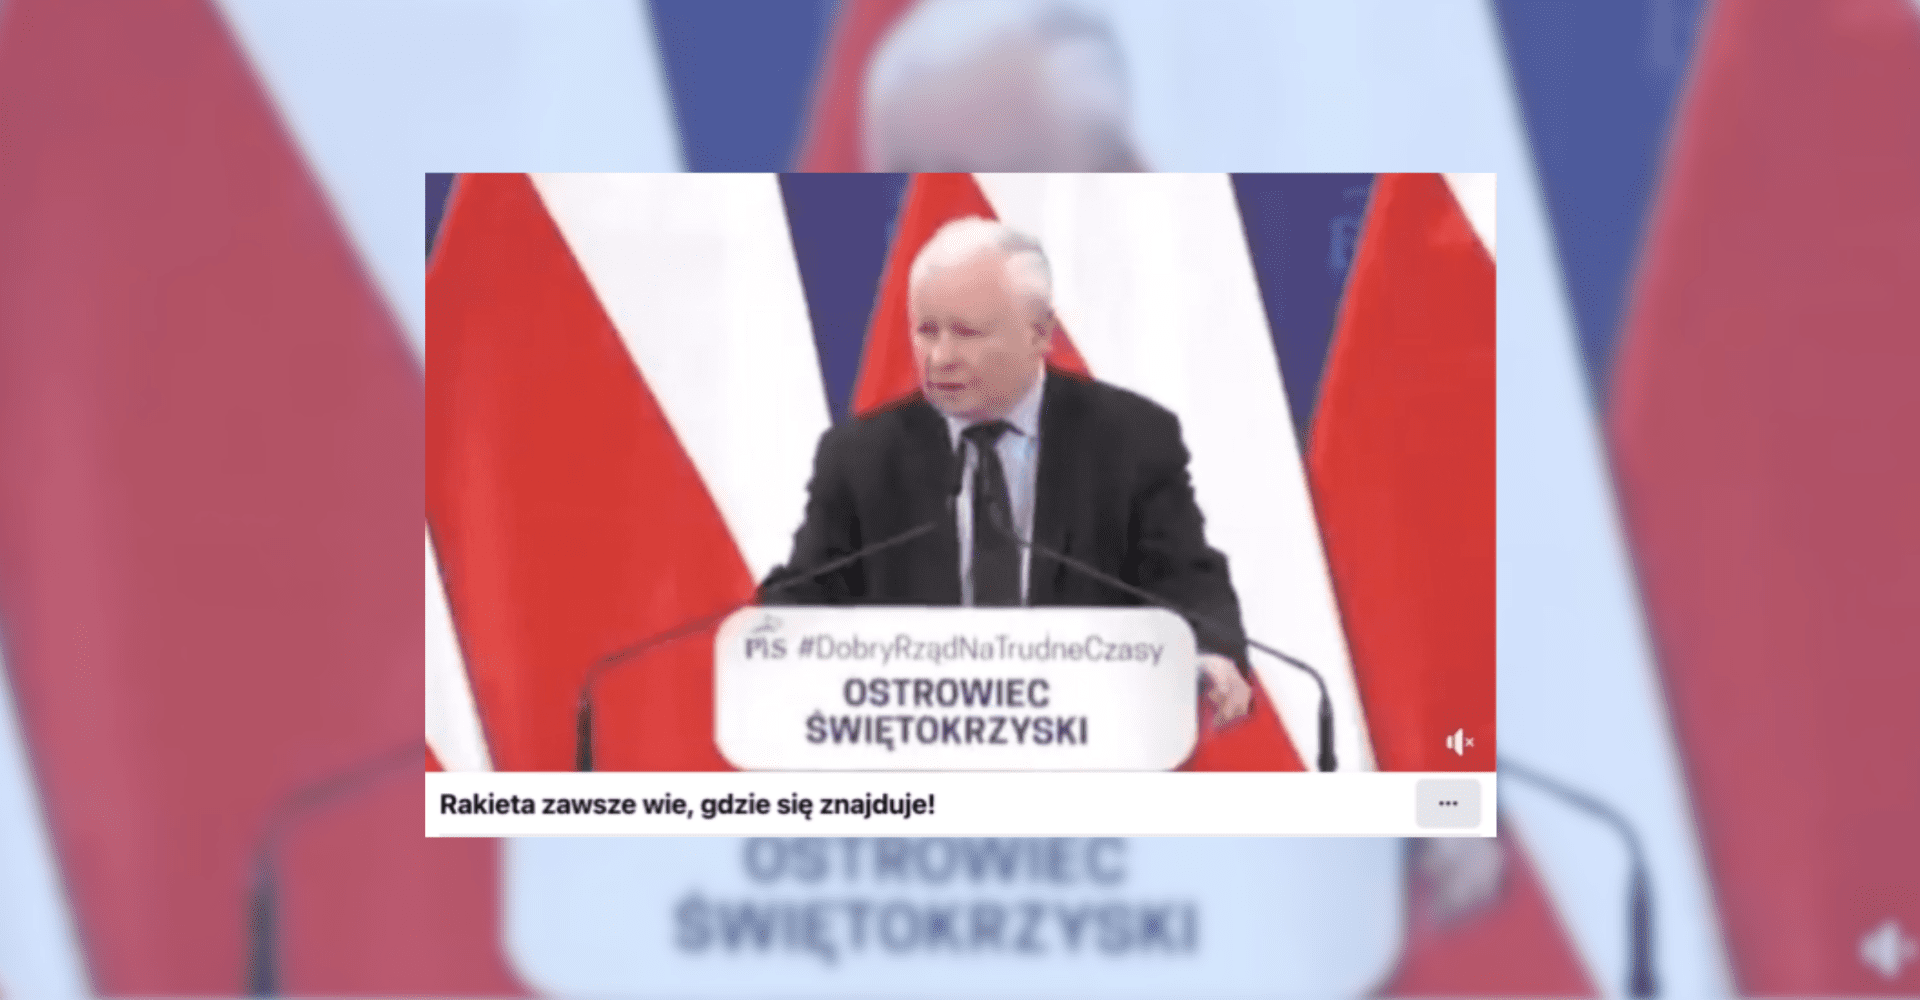 Screenshot zmanipulowanego nagrania z Jarosławem Kaczyńskim, który występował w Ostrowcu Świętokrzyskim z podpisem: „Rakieta zawsze wie, gdzie się znajduje!”